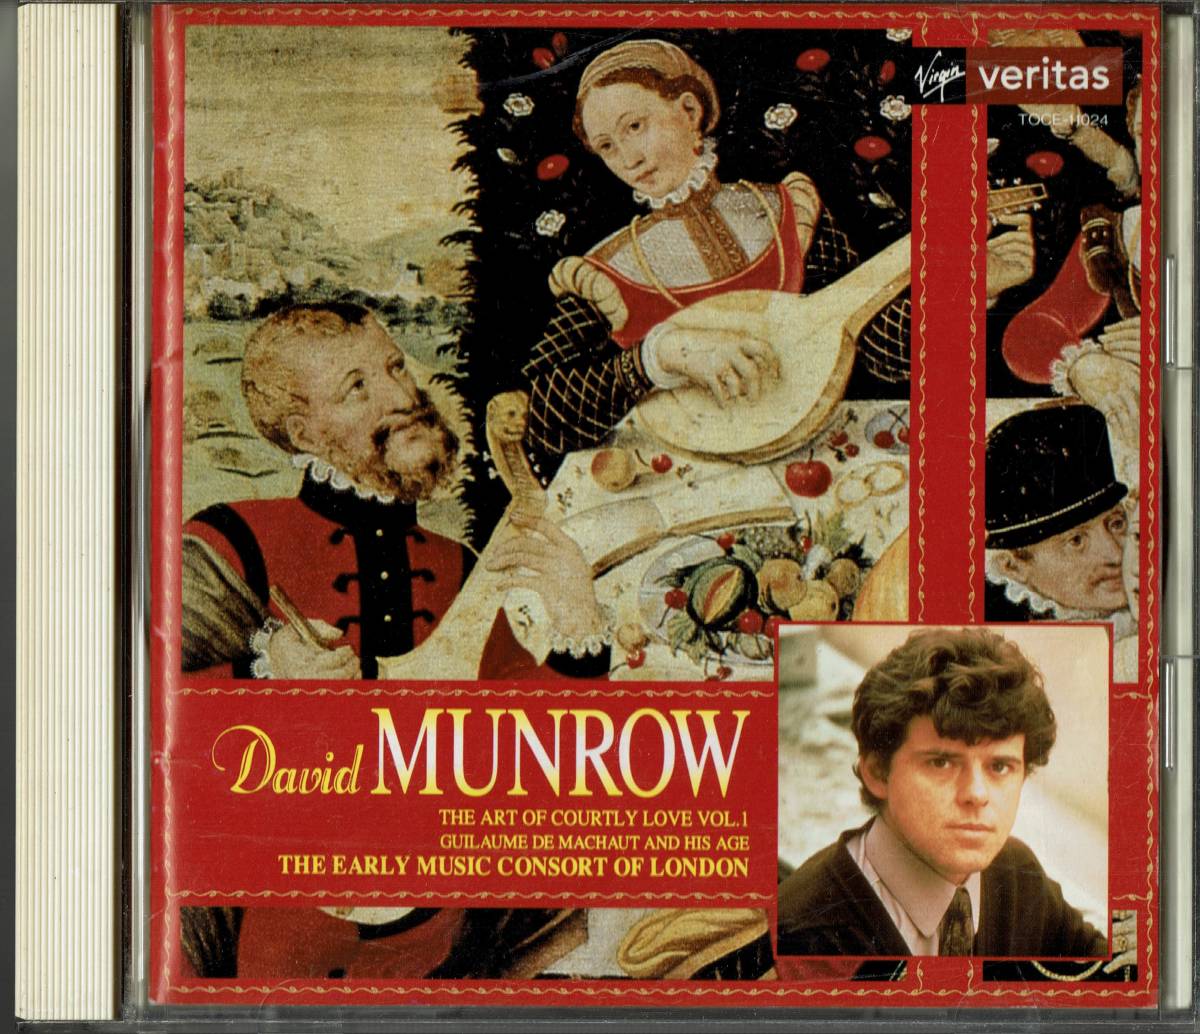 デイヴィッド・マンロウ の芸術1 宮廷の愛vol1(ギョームド・マショーとその時代） CD 送料無料